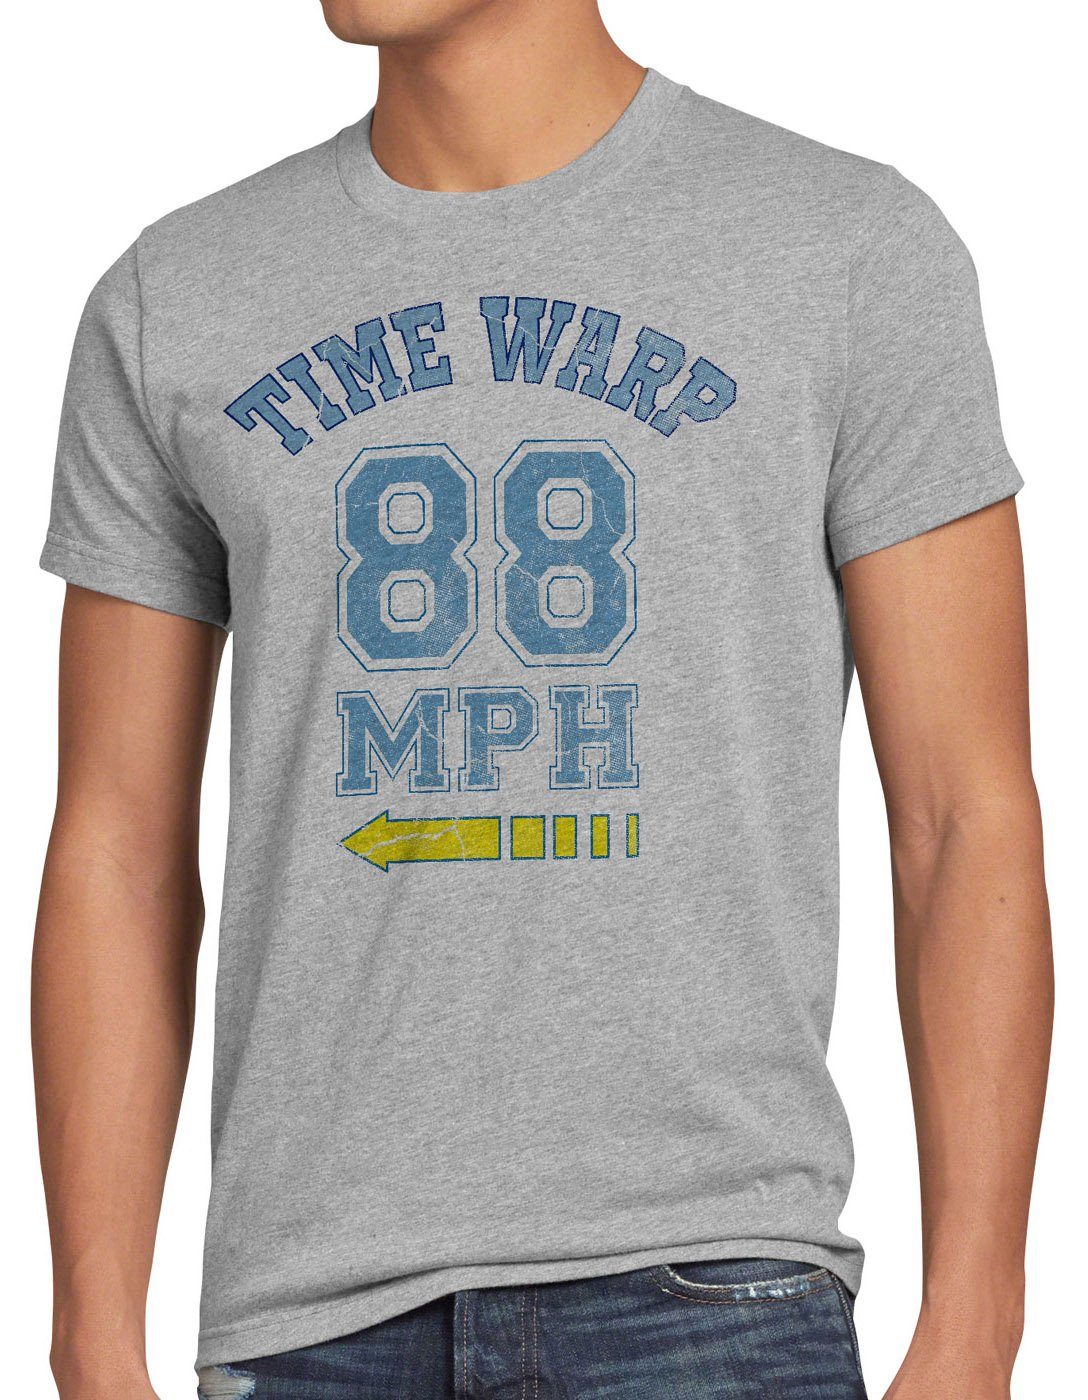 style3 Print-Shirt Herren T-Shirt Time Warp 88mph Flux Future Fly Zukunft Zurück Zeitreise delorean grau meliert